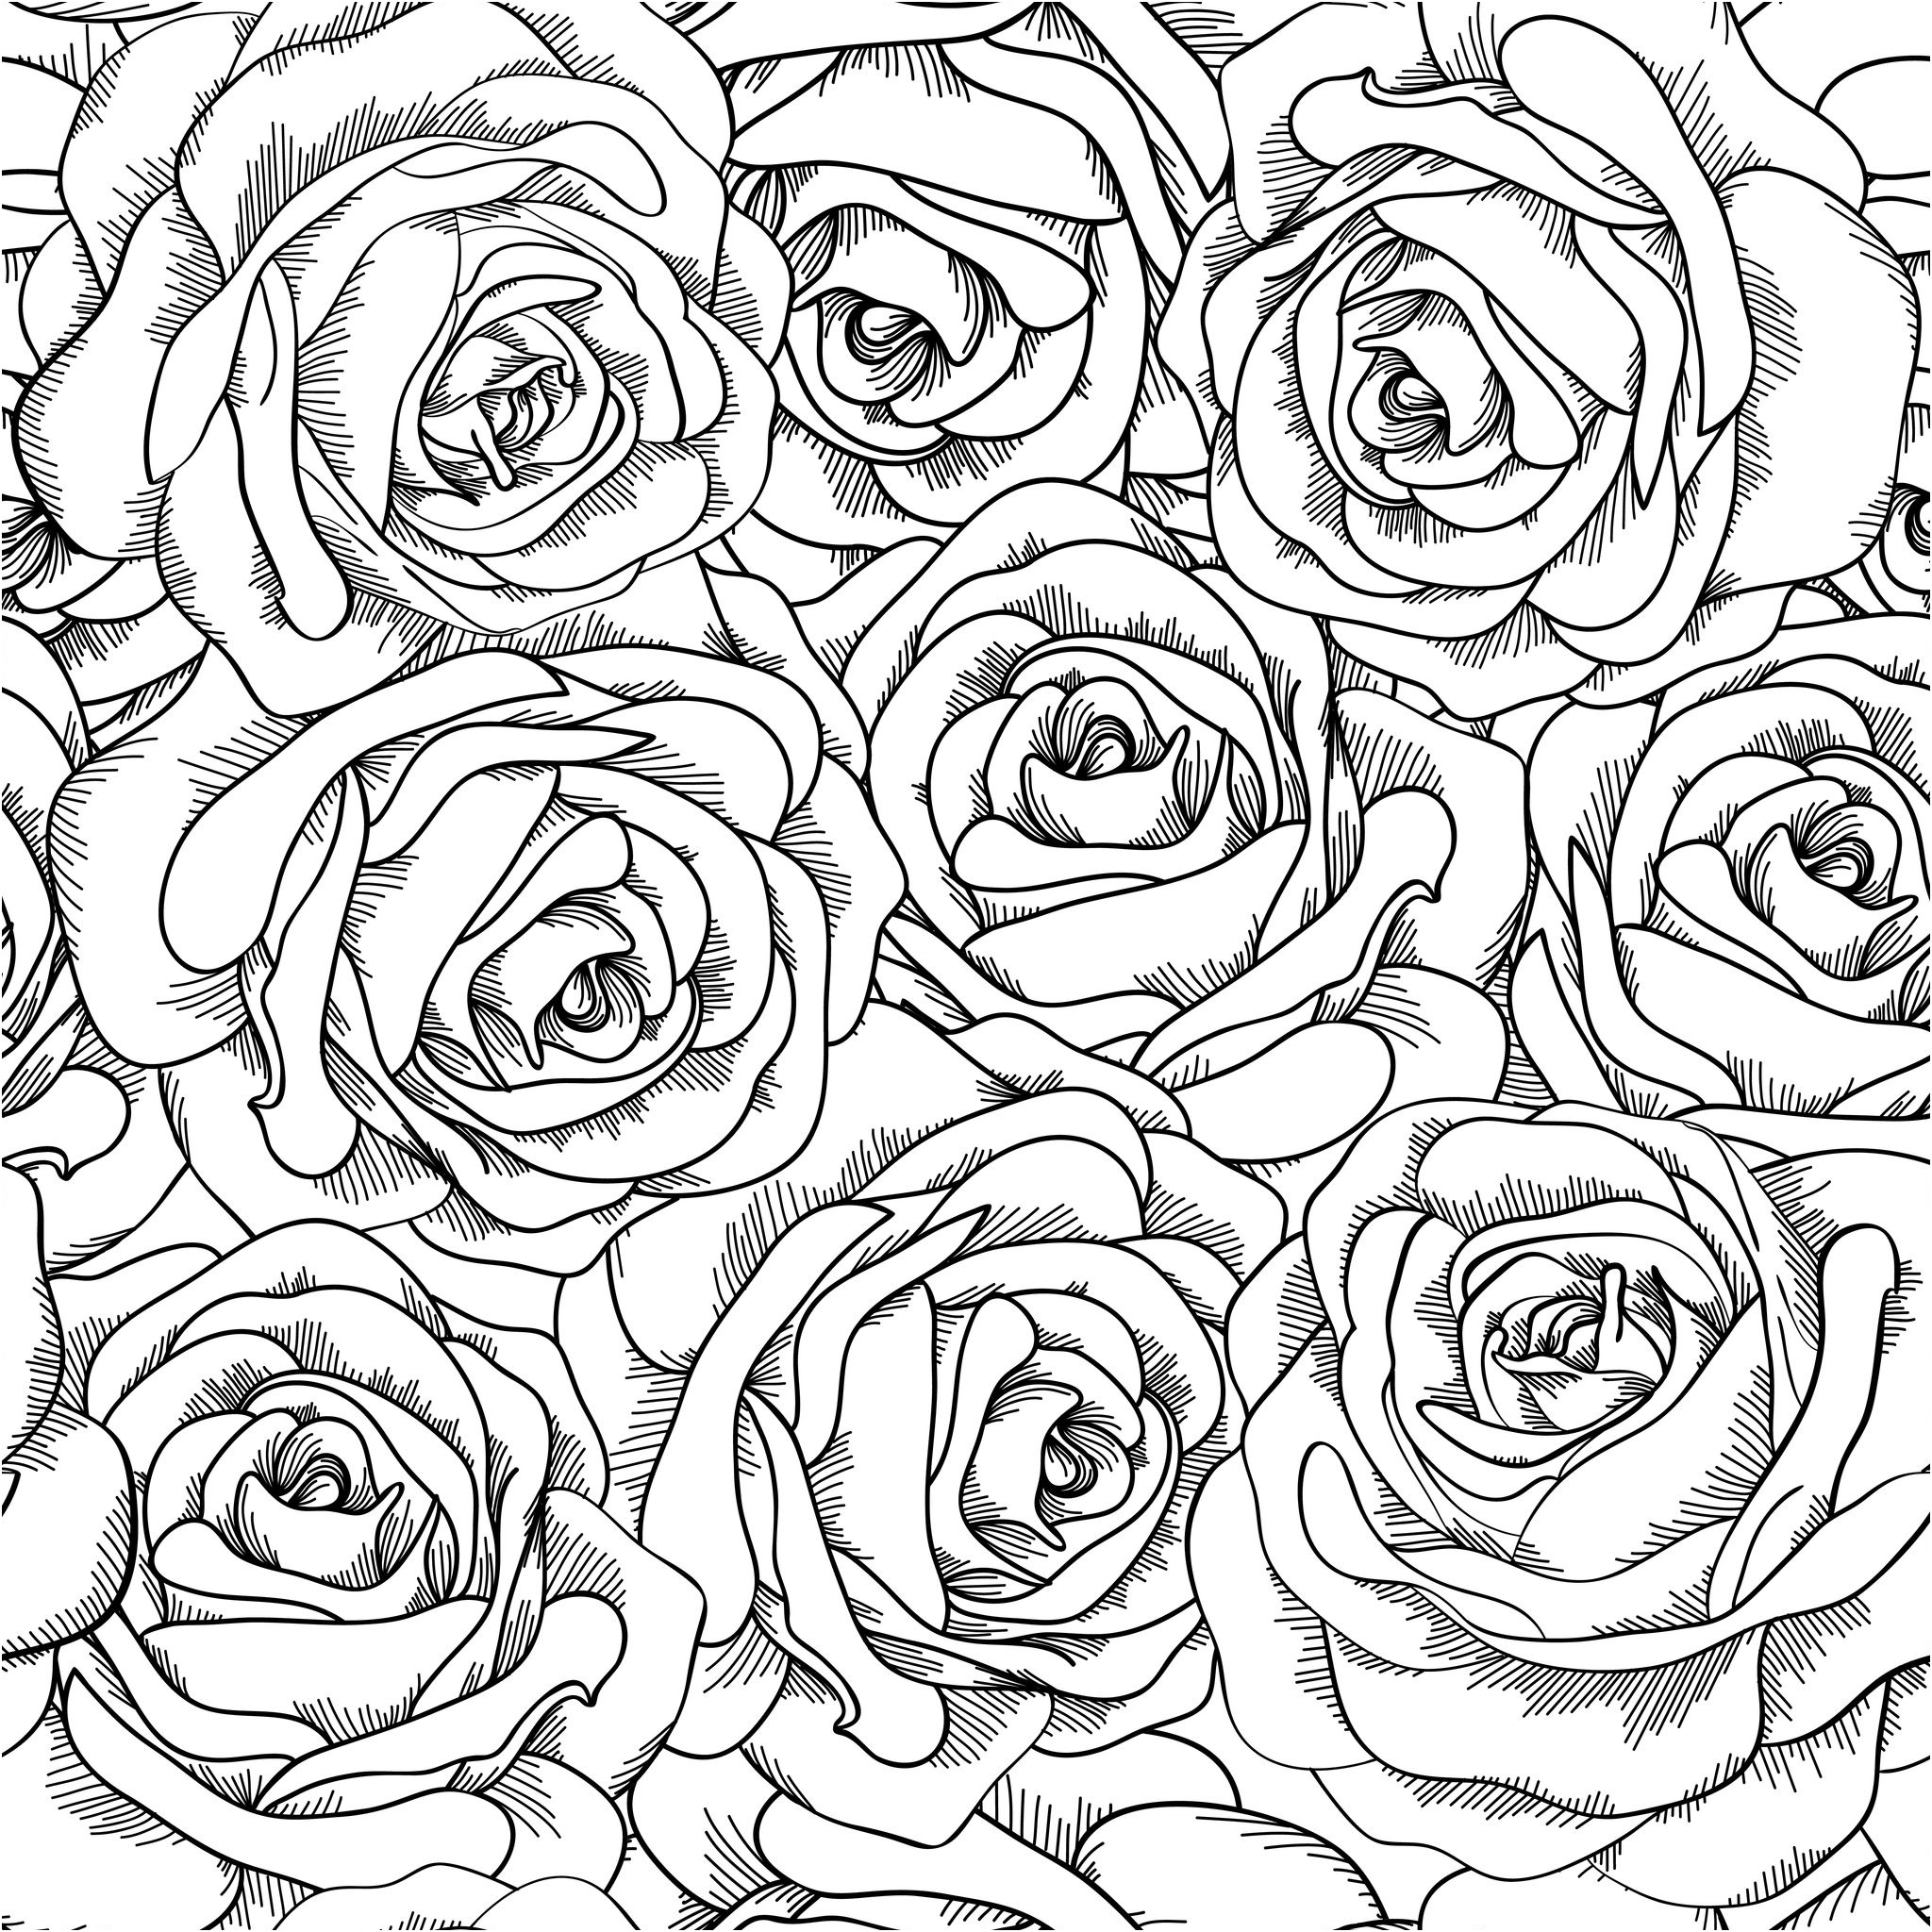 q=adult roses